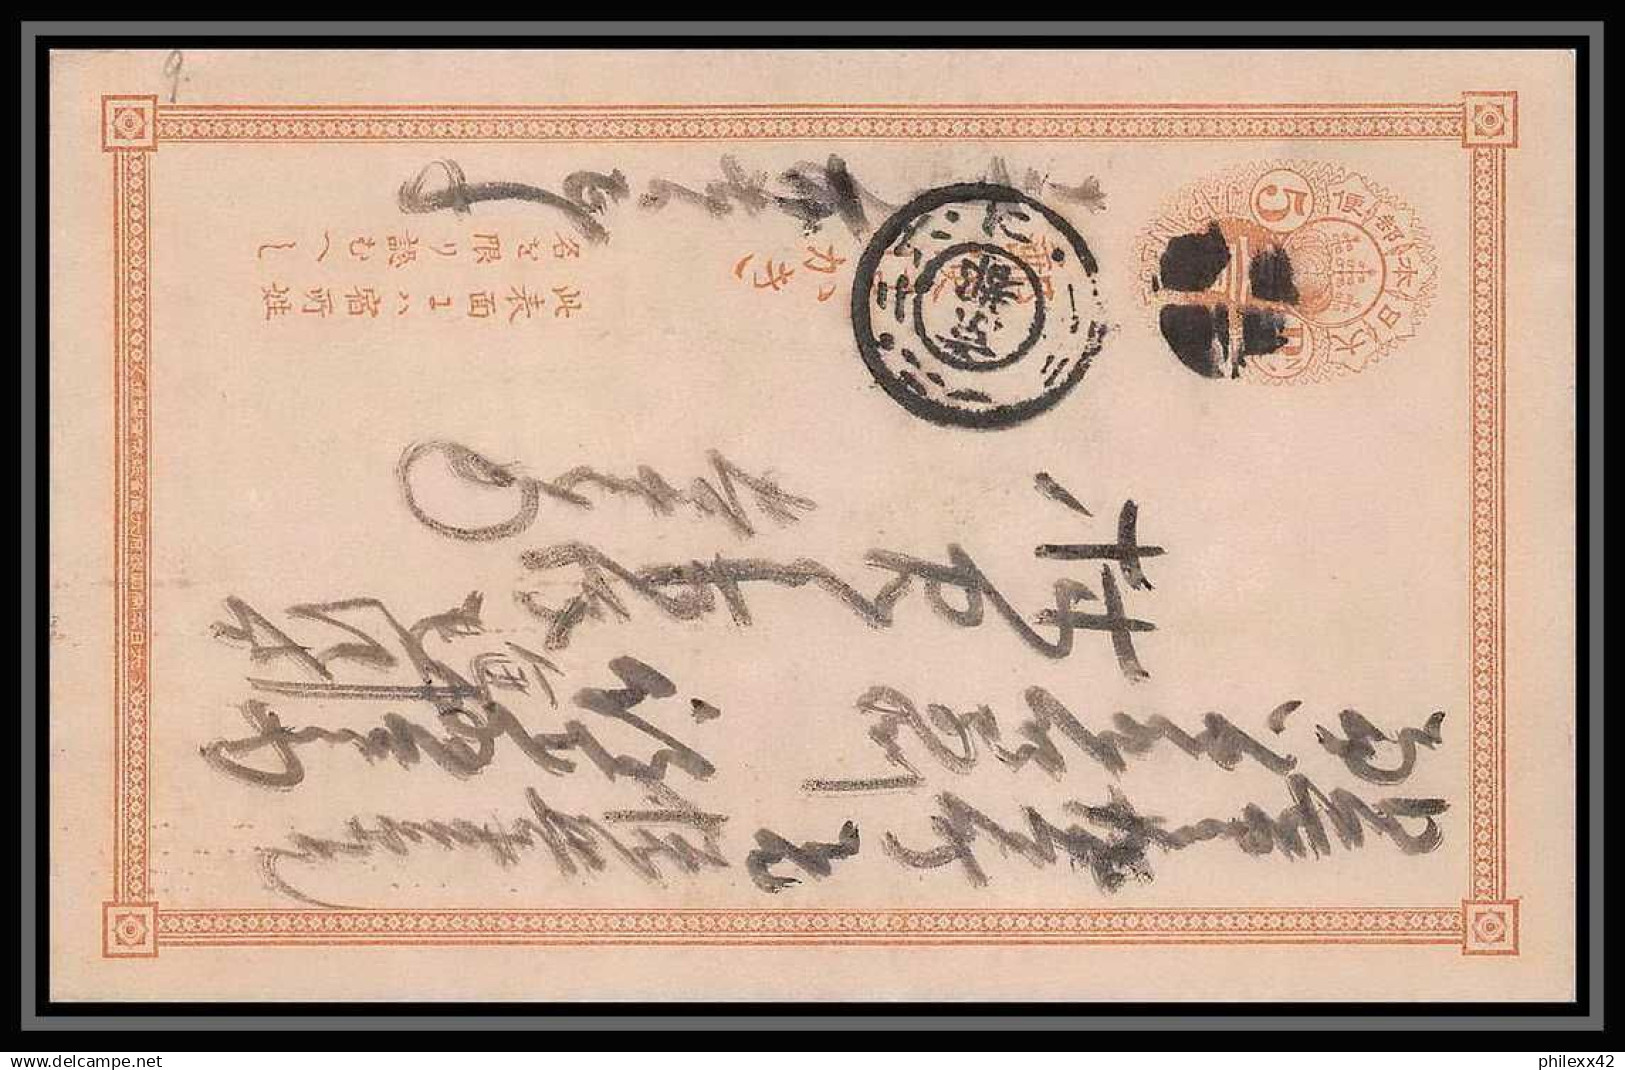 2034/ Japon (Japan) lot de 13 Stationery Carte postale (postcard) N° 9 et N°11 